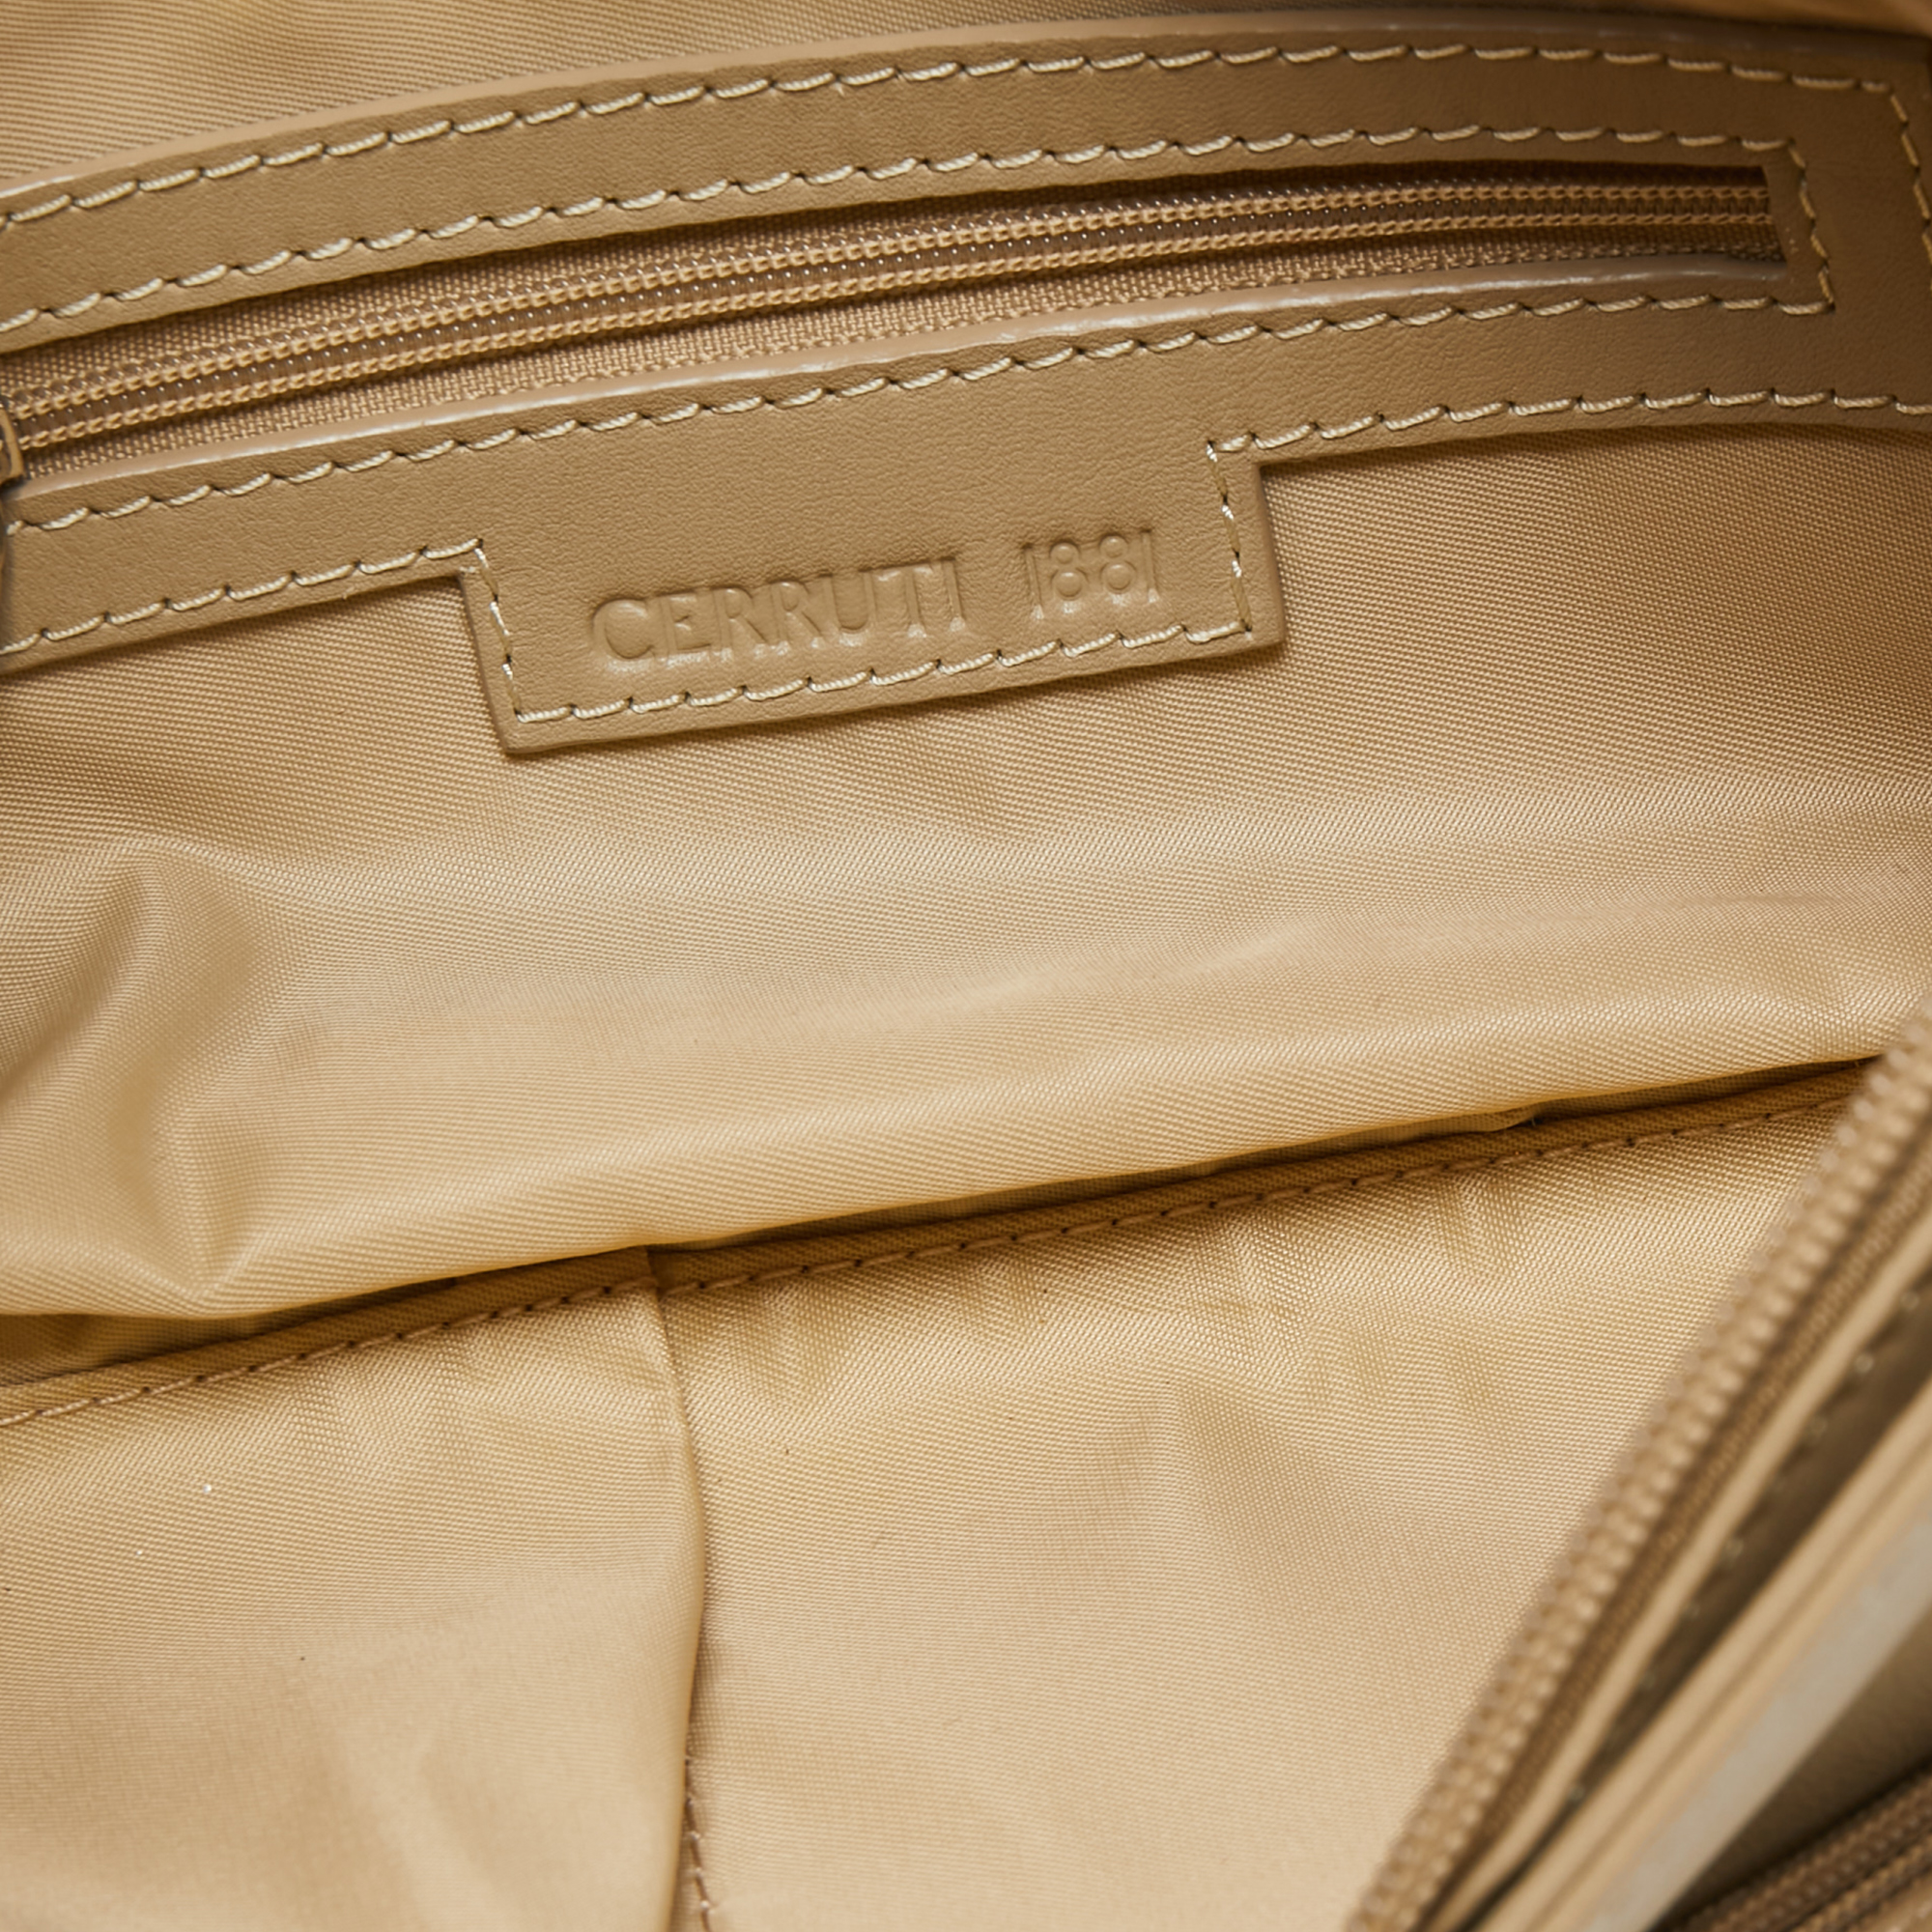 Cerruti 1881 Beige Leather Shoulder Bag